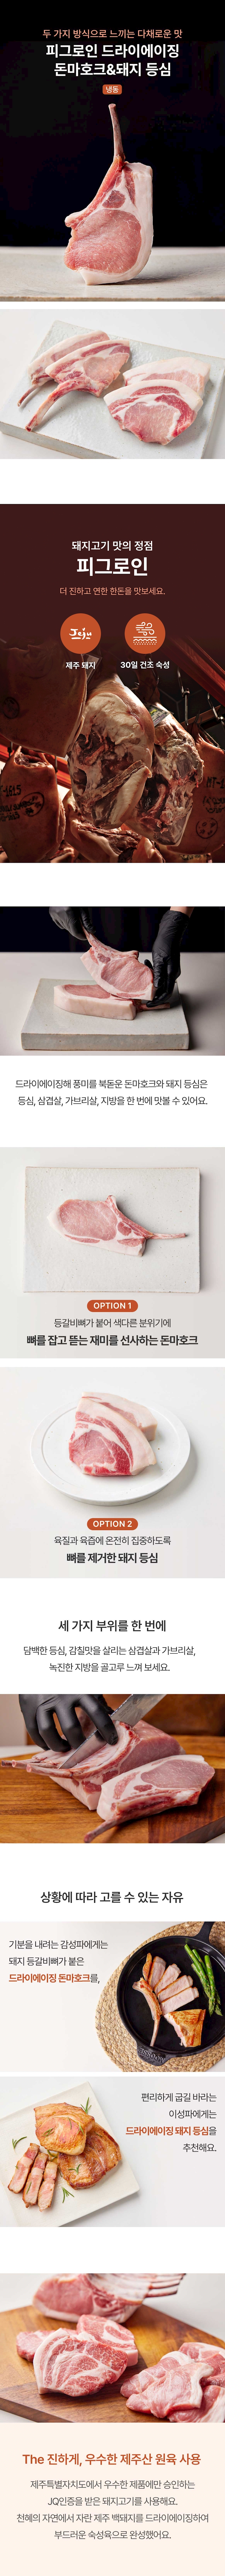 피그로인 드라이에이징 돈마호크 & 돼지 등심 - Product Detail Image - 0